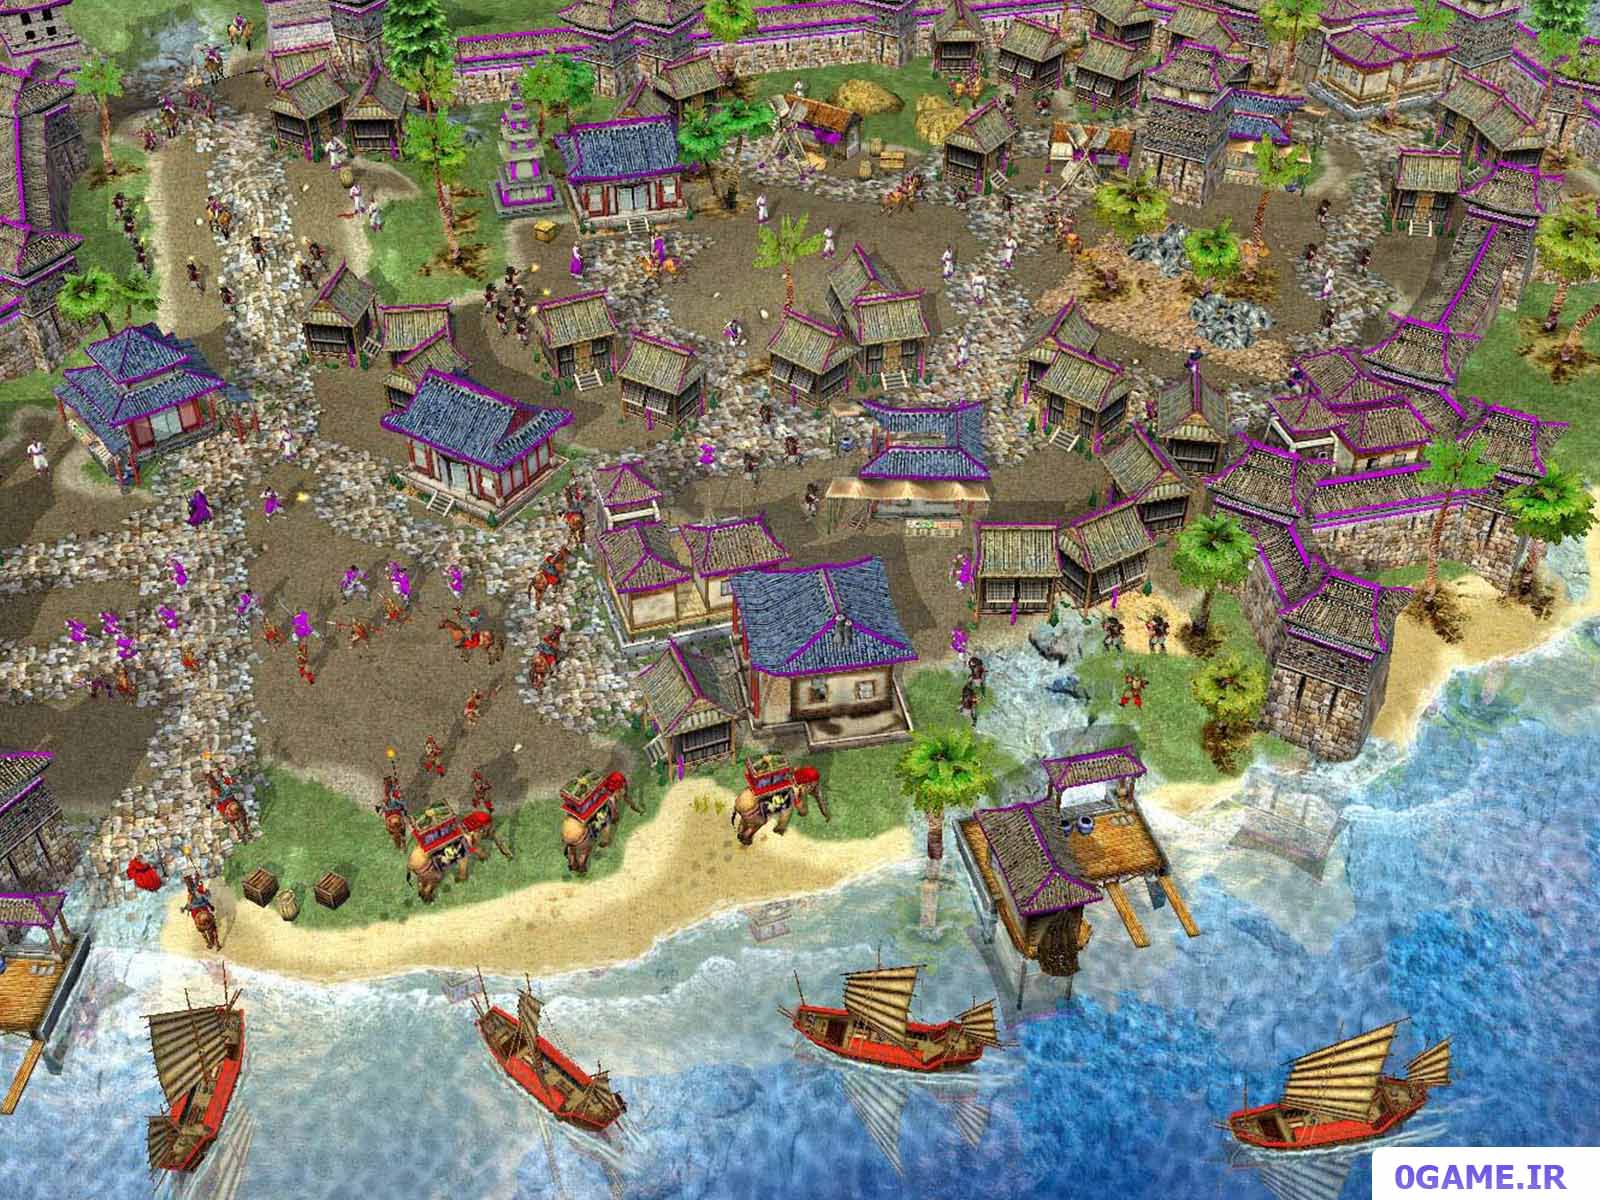 دانلود بازی امپراتوری: طلوع دنیای مدرن (Empires: Dawn of the Modern World) نسخه کامل برای کامپیوتر